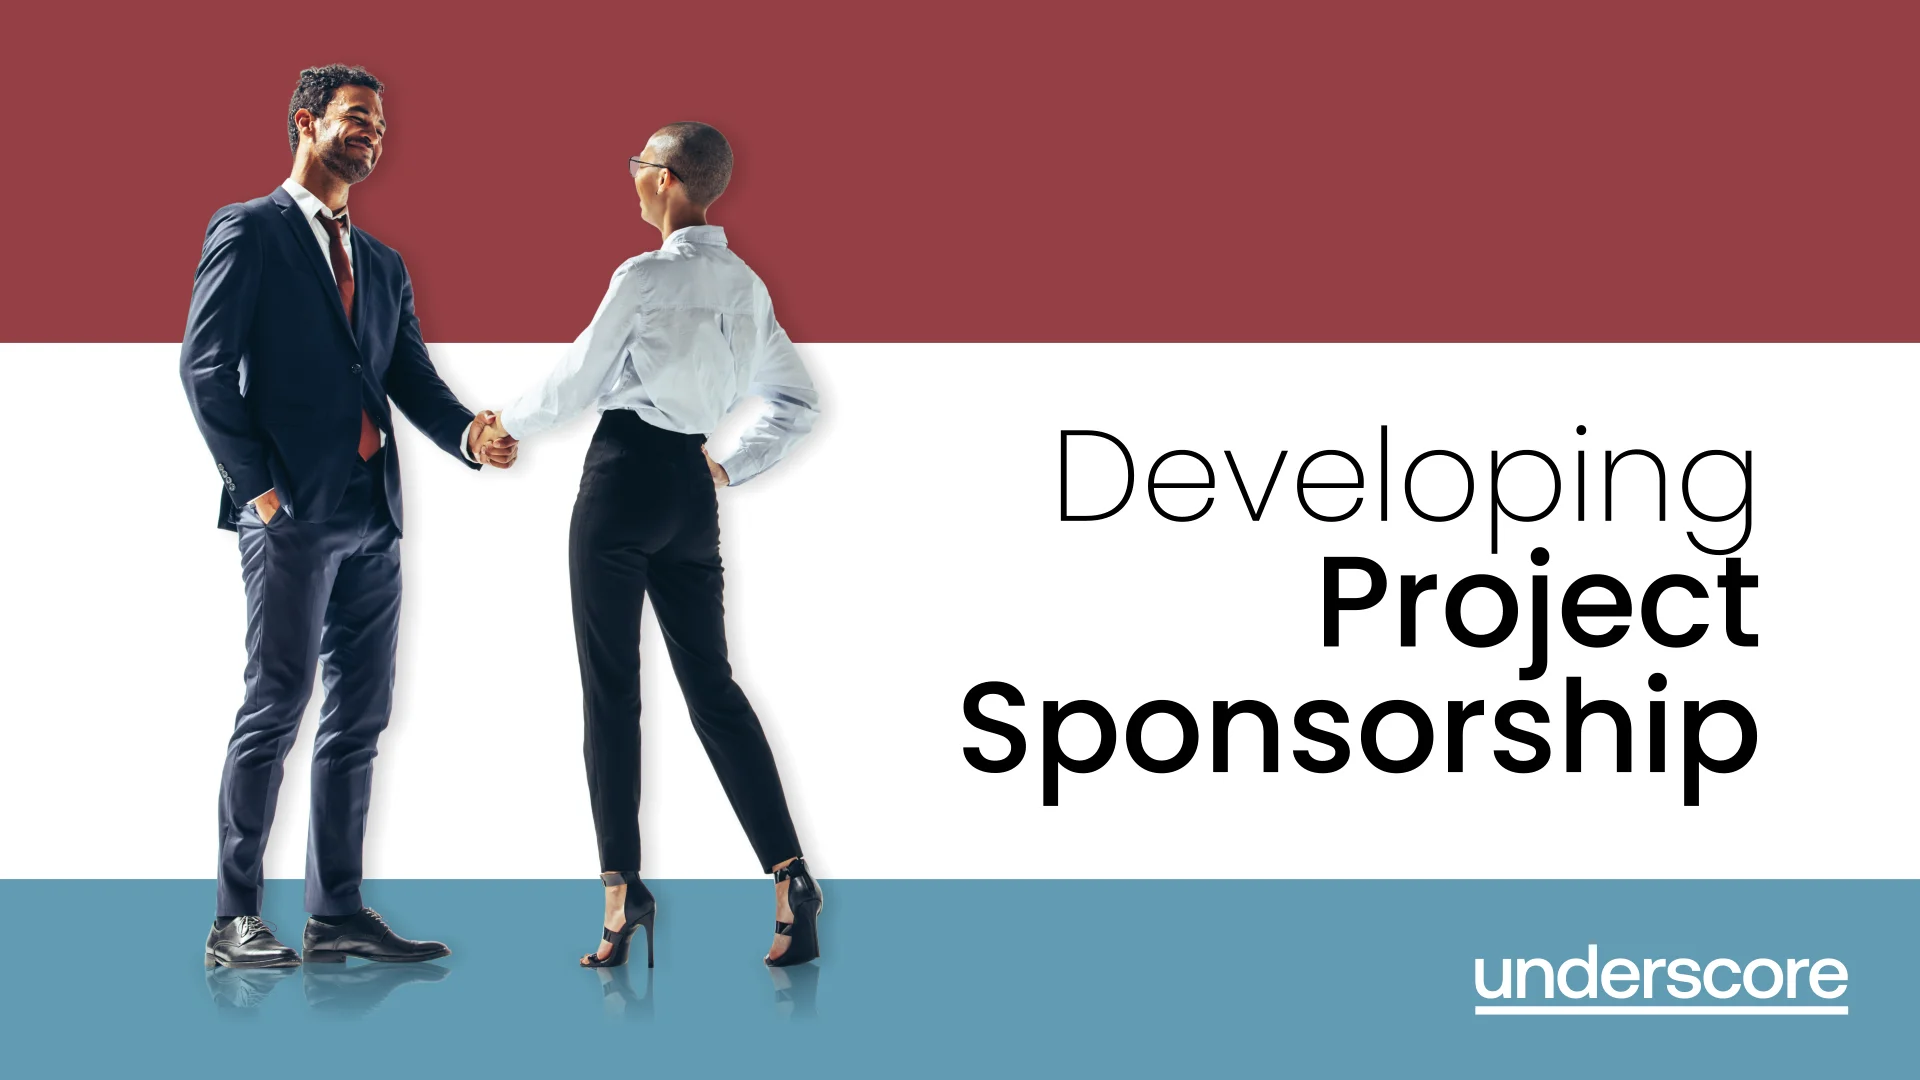 Developing programme sponsorship